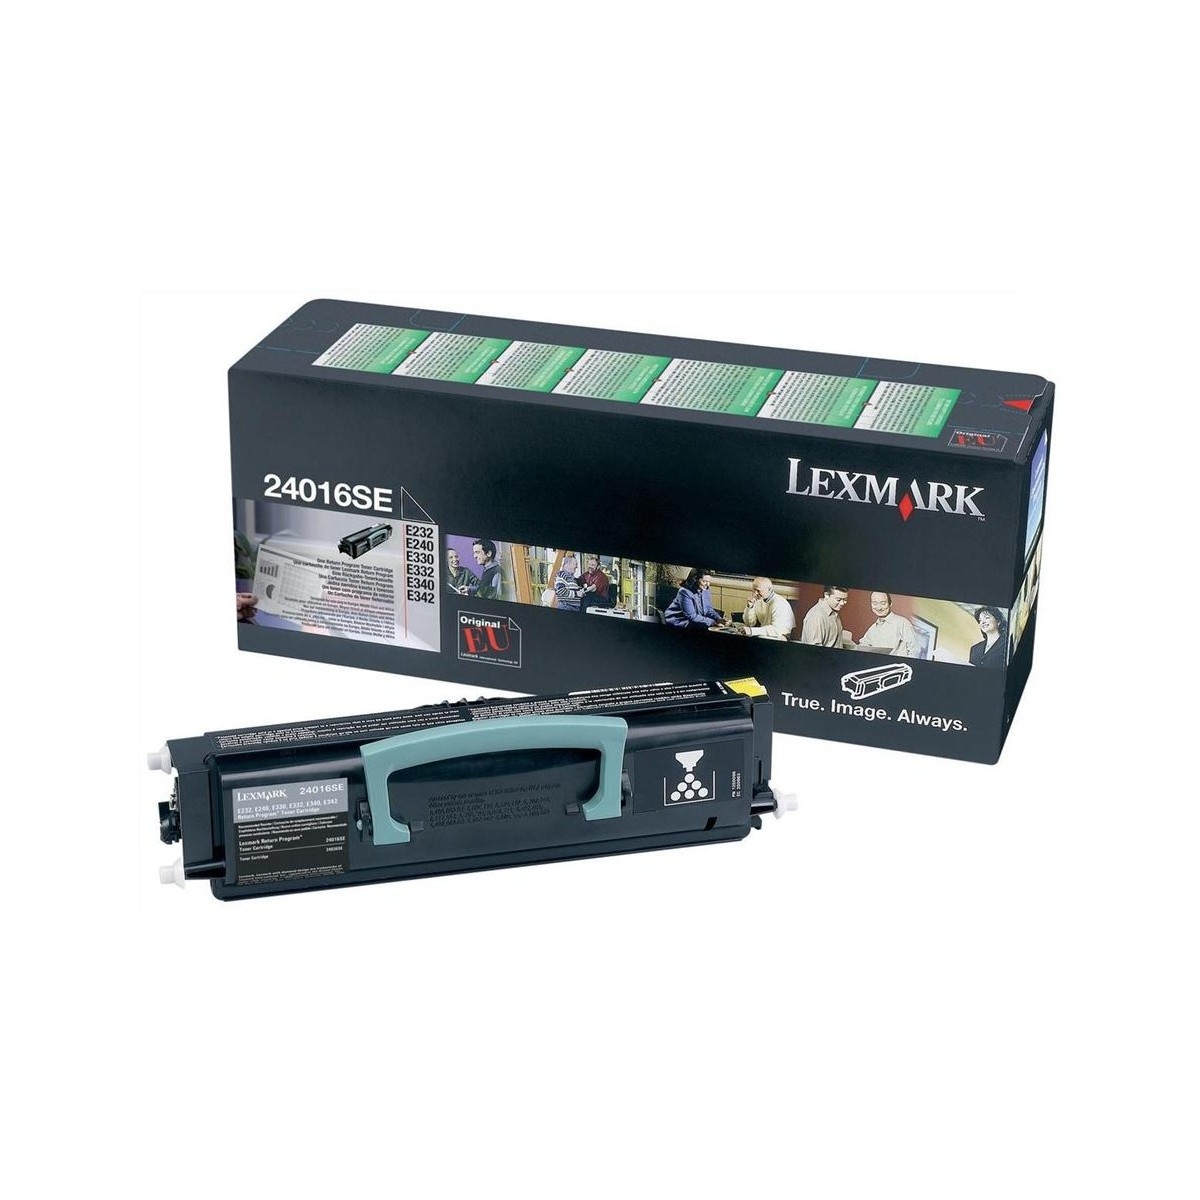 Lexmark 24016SE - 2500 pages - Black - 1 pc(s)